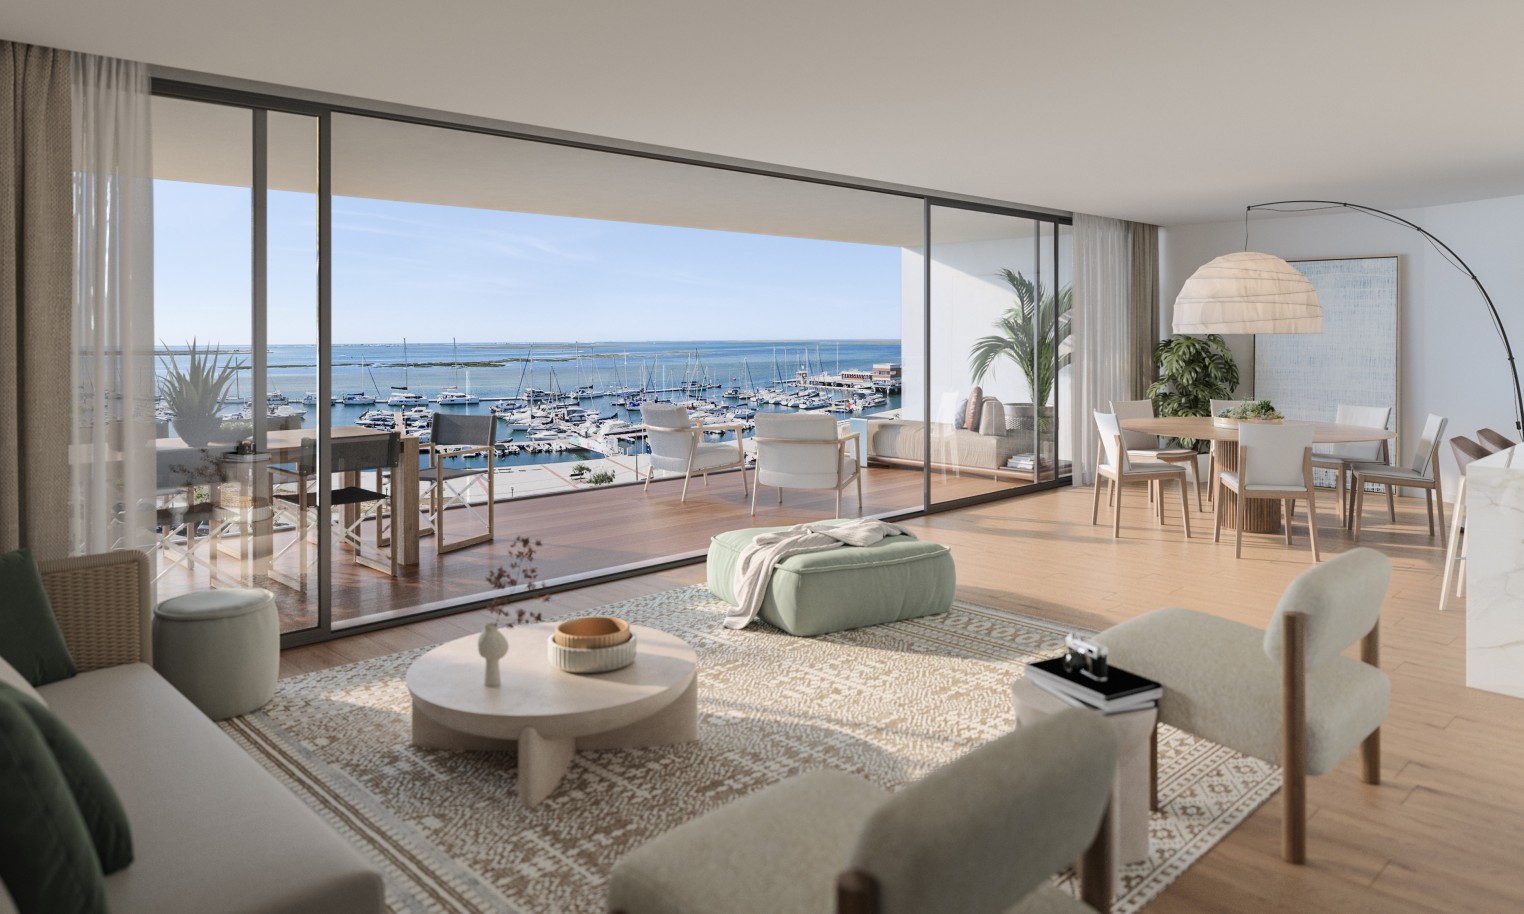 Appartements neufs avec vue sur mer, 1, 2 & 3 chambres, à vendre à Olhão, Algarve_243894